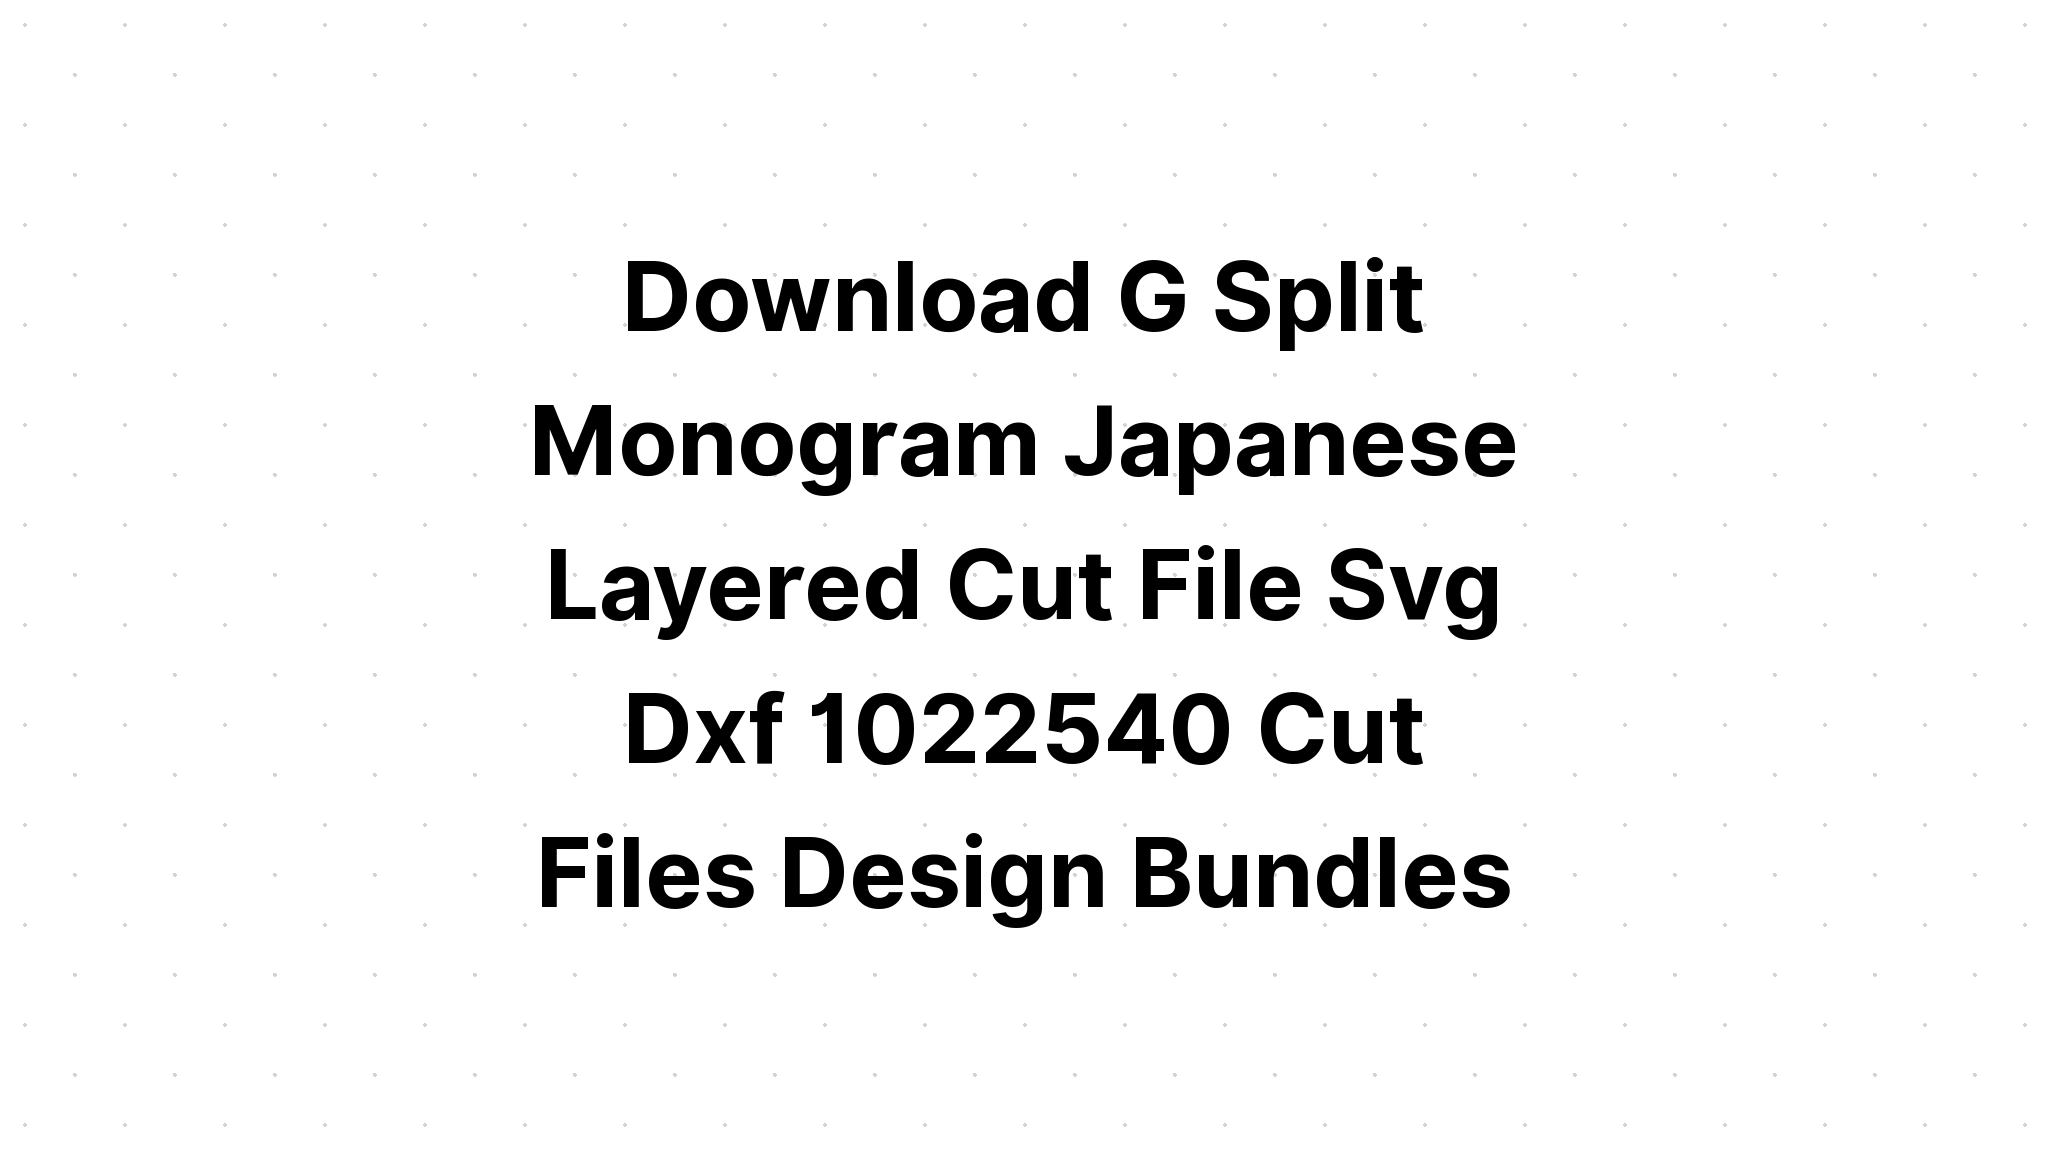 Download Multi Layered Lion Mandala Layered Svg Free - Layered SVG Cut File